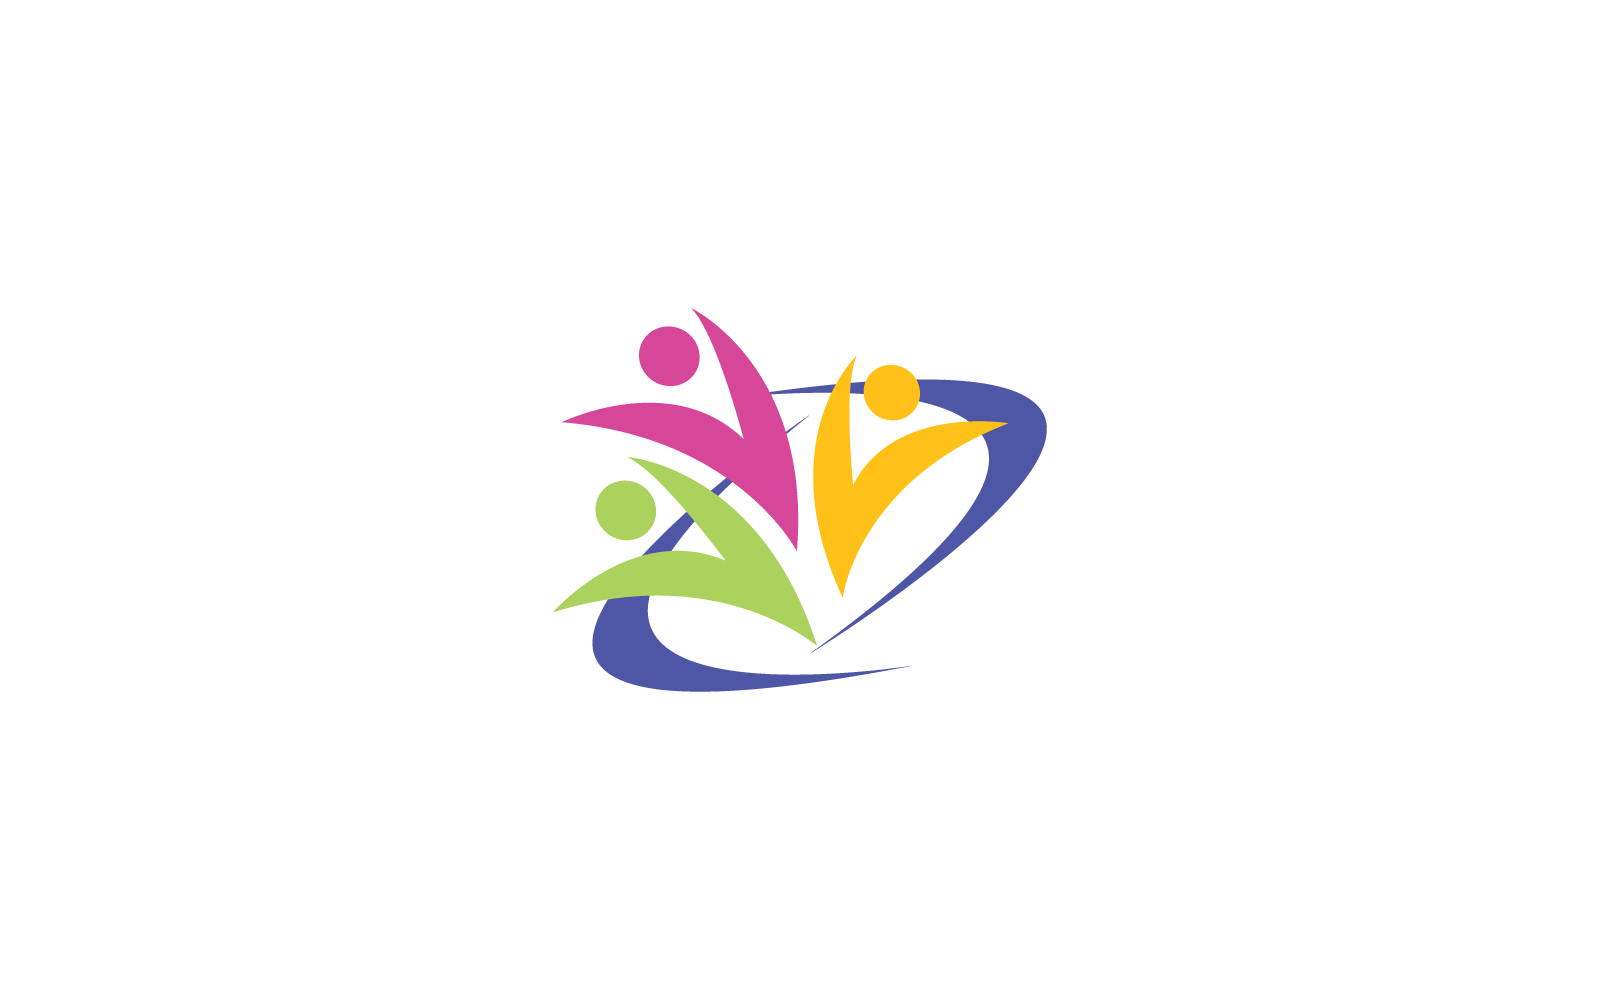 Szablon logo ilustracji projektu opieki społecznej